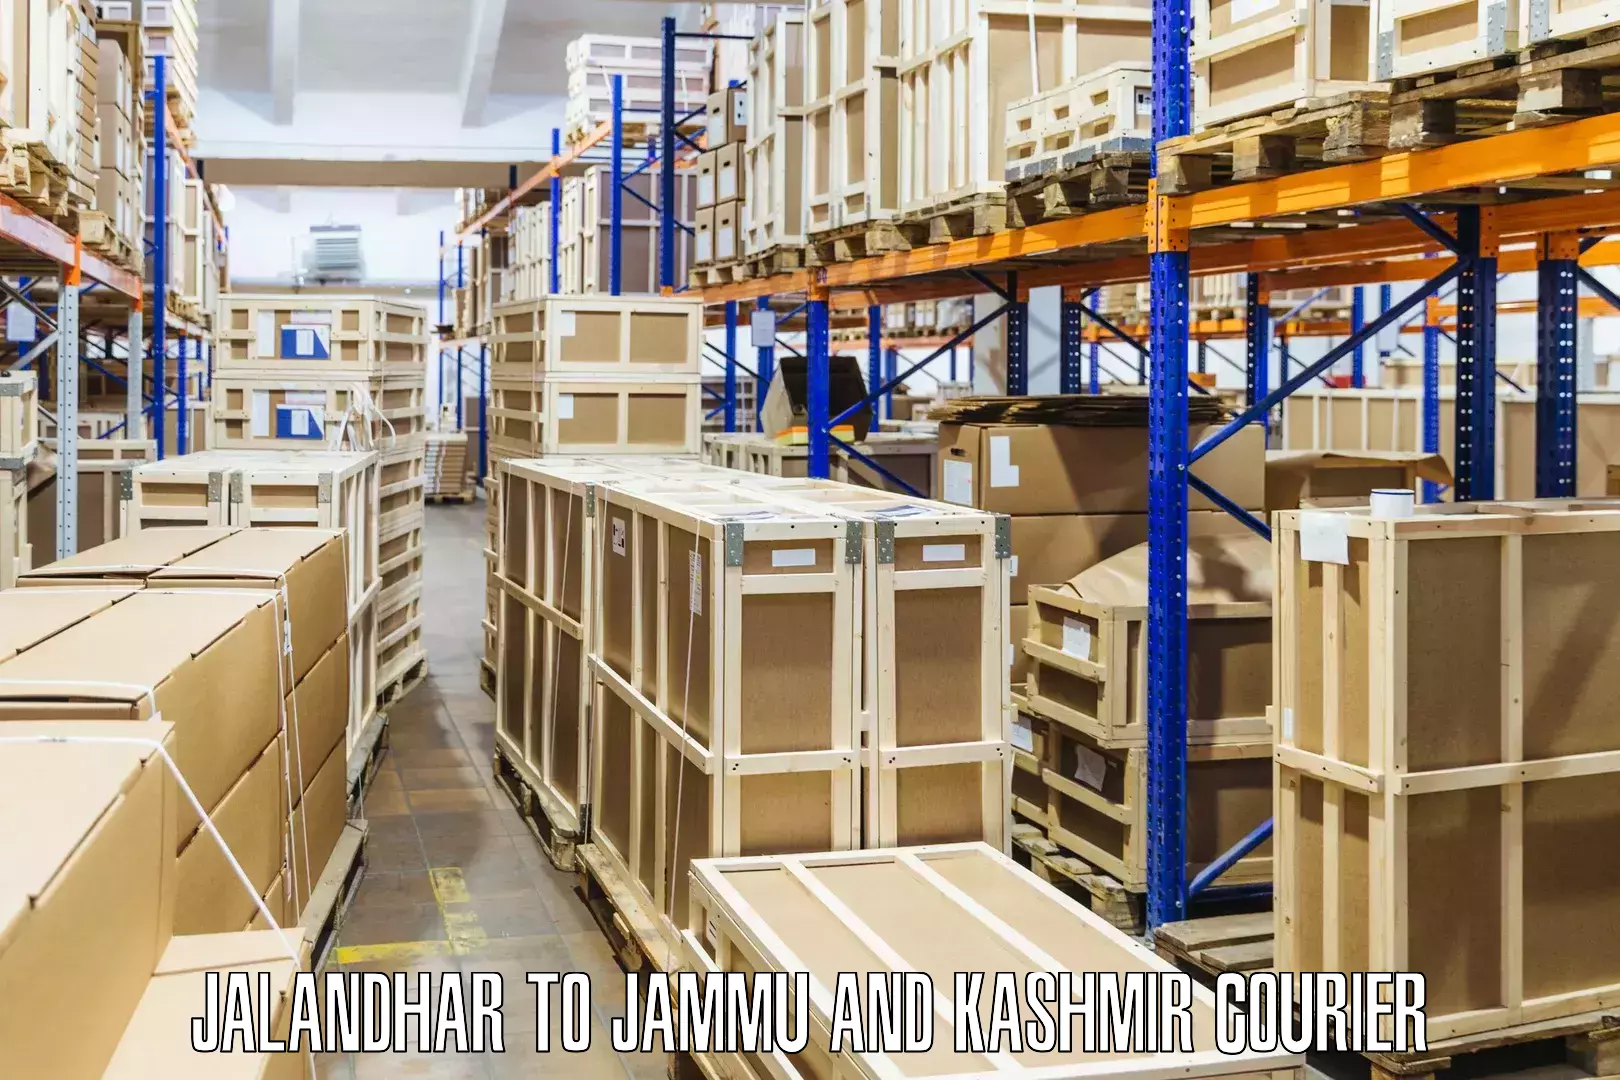 Cross-border shipping Jalandhar to Reasi